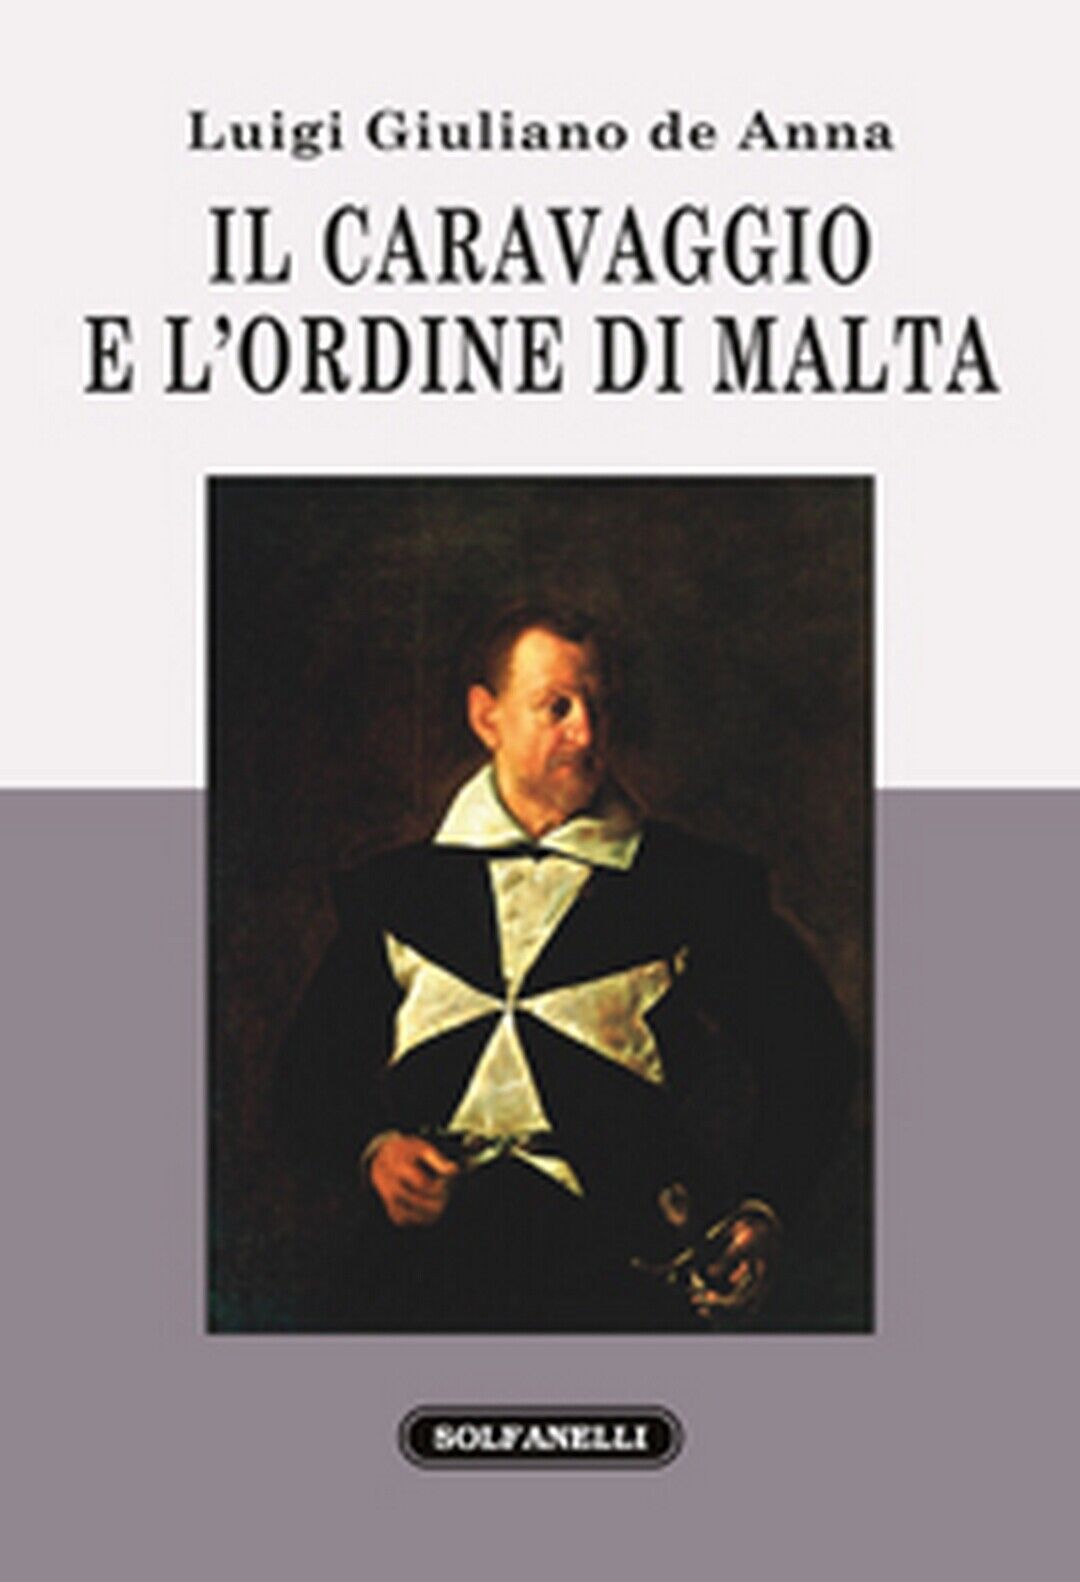 IL CARAVAGGIO E L'ORDINE DI MALTA  di Luigi Giuliano De Ann,  Solfanelli Ed.